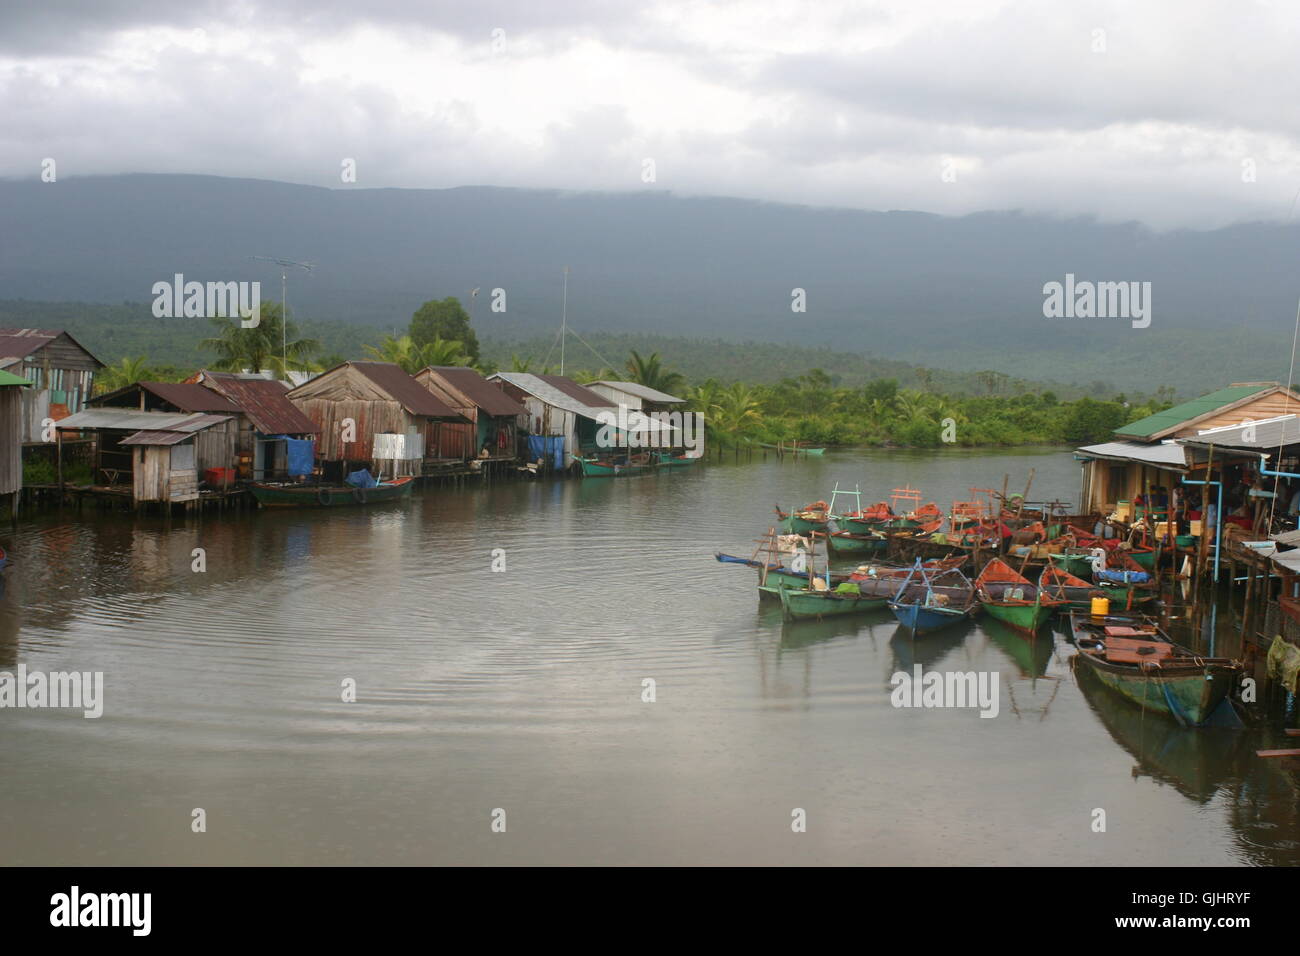 fishermem village in asia Stock Photo